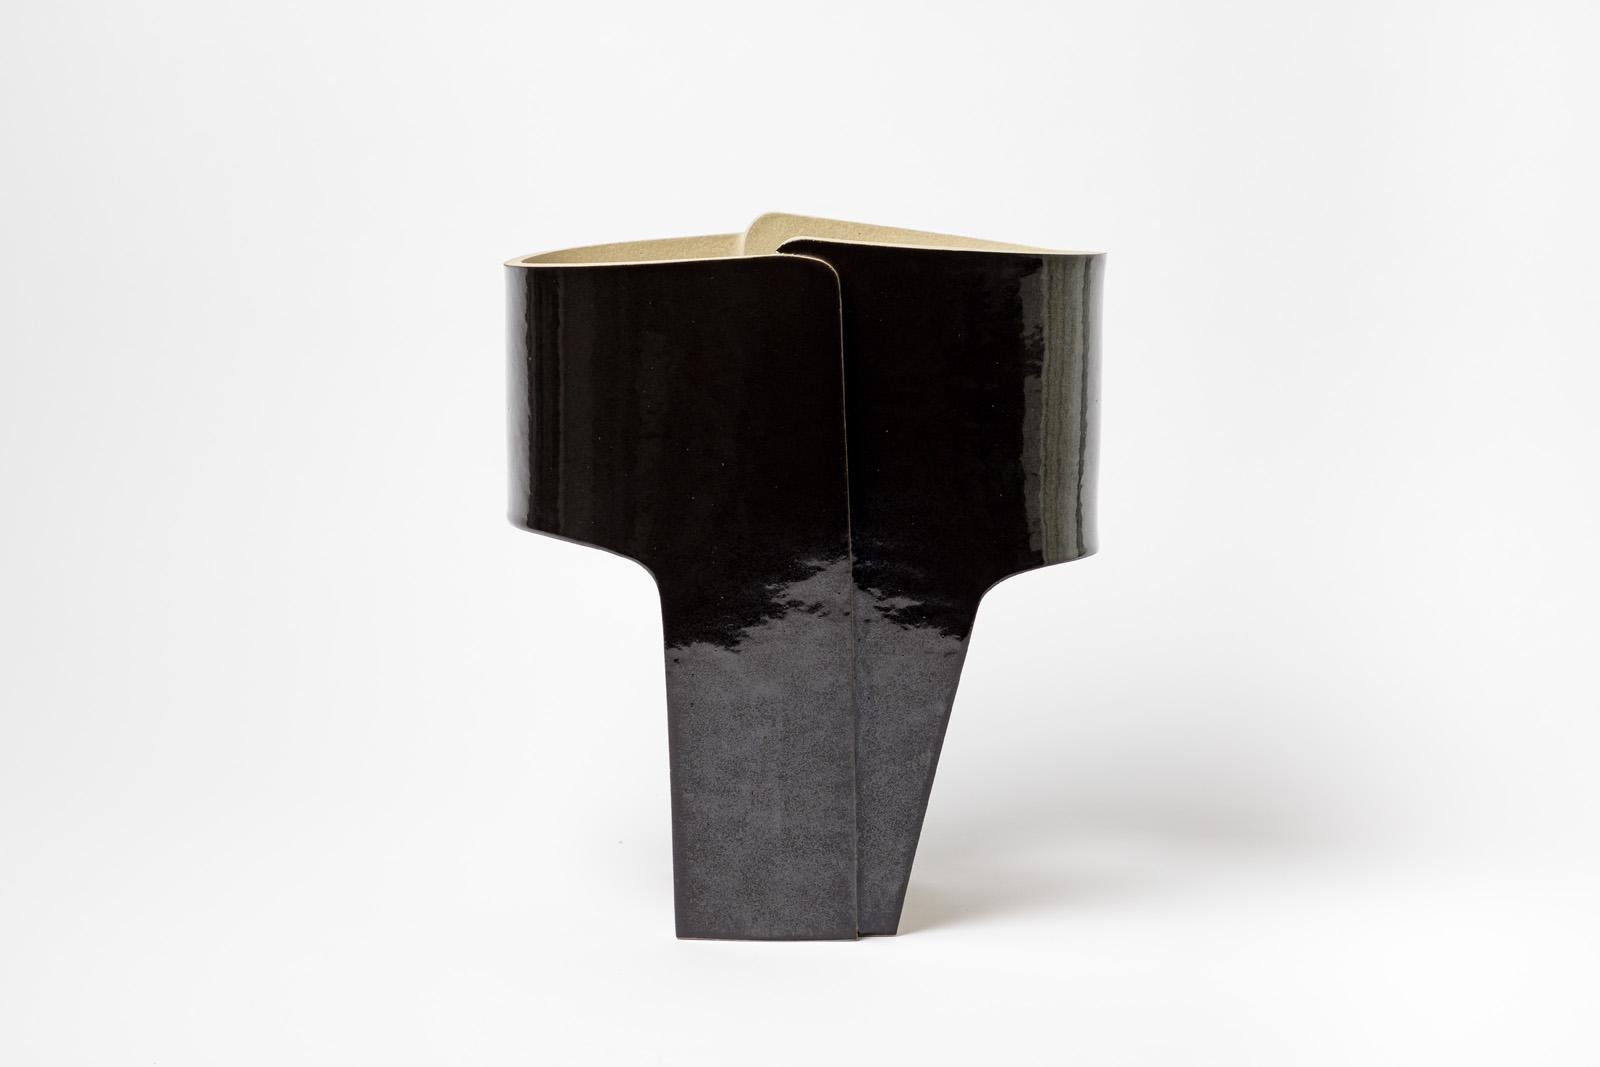 Eine Tischlampe aus Keramik mit schwarzer Glasur von Denis Castaing.
Verkauft mit einer neuen europäischen elektrischen Anlage.
2022.
